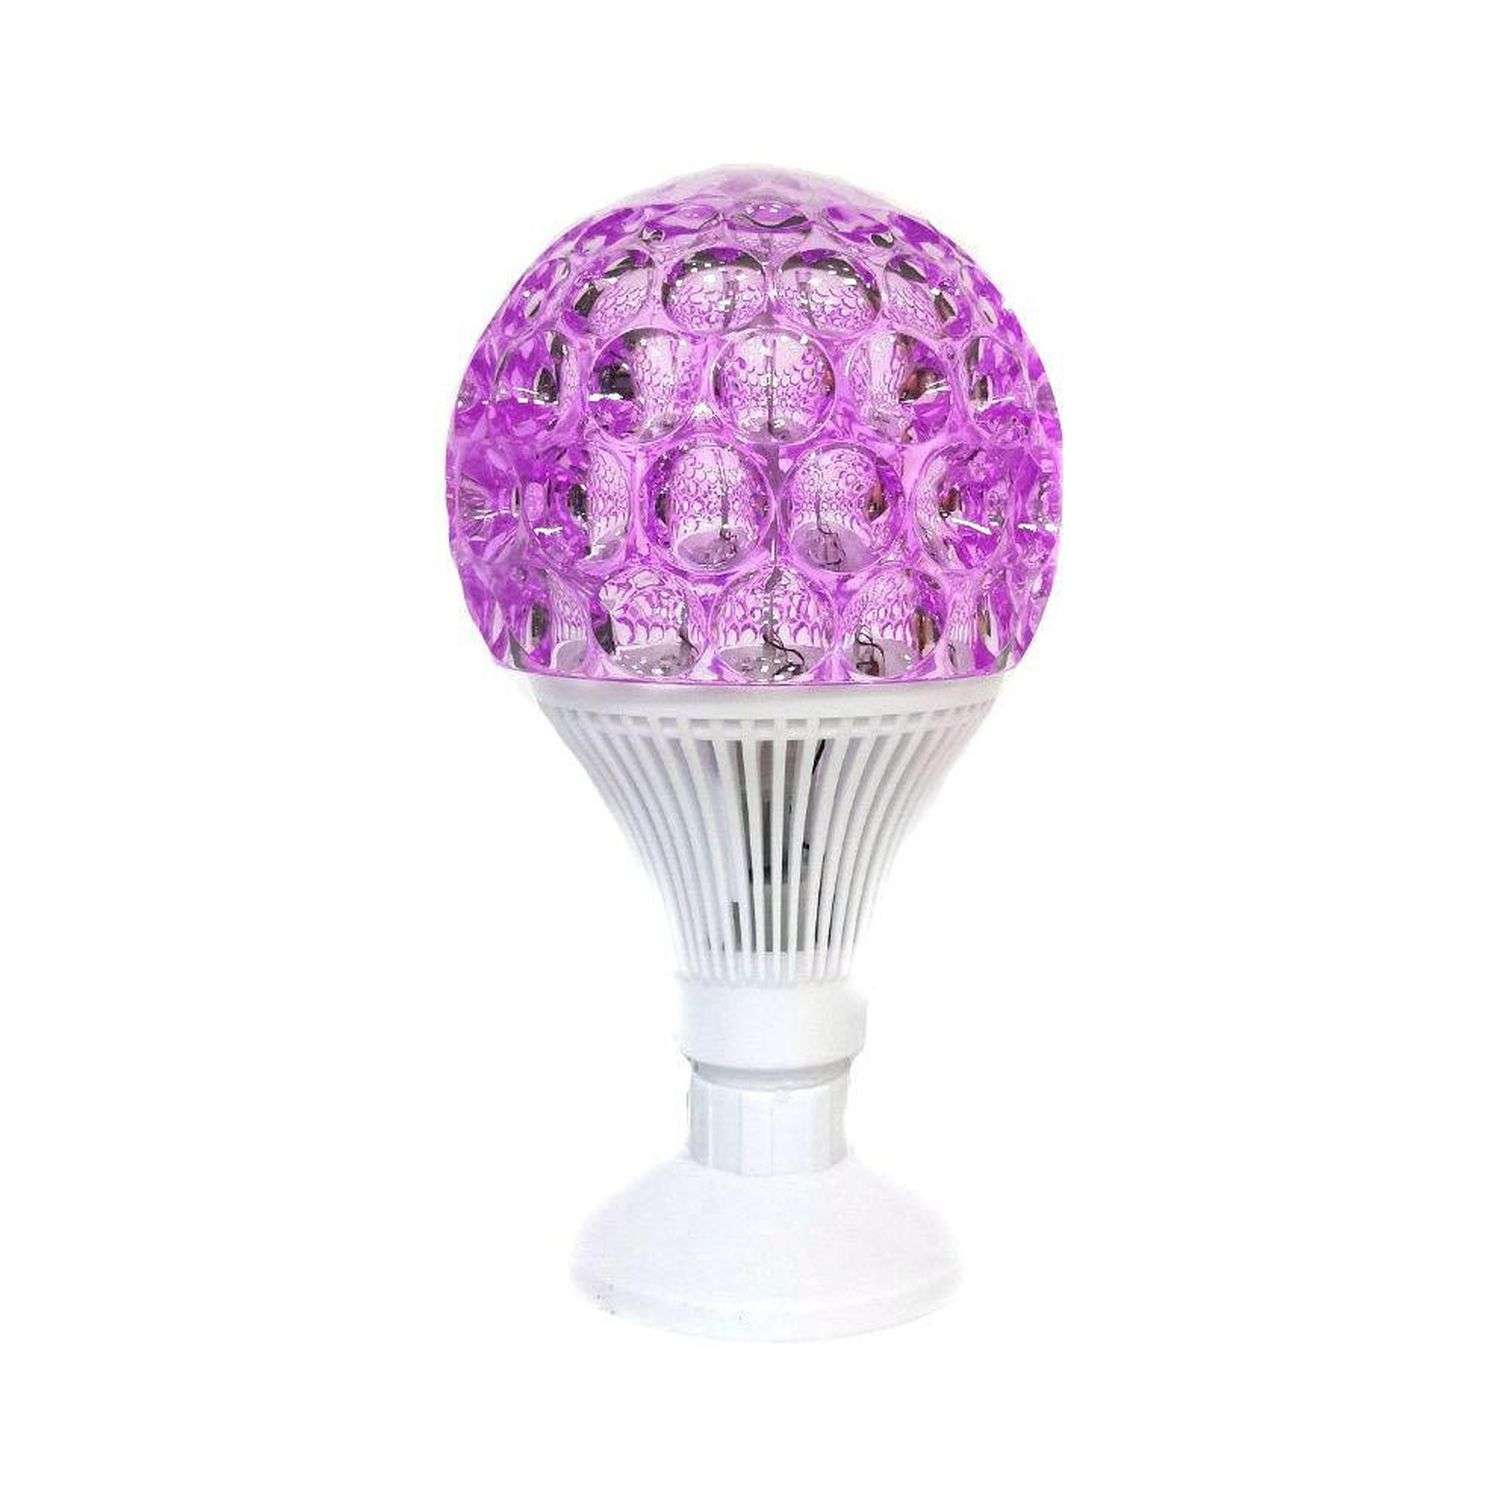 Светильник Uniglodis светящийся шар на подставке розовый - фото 1